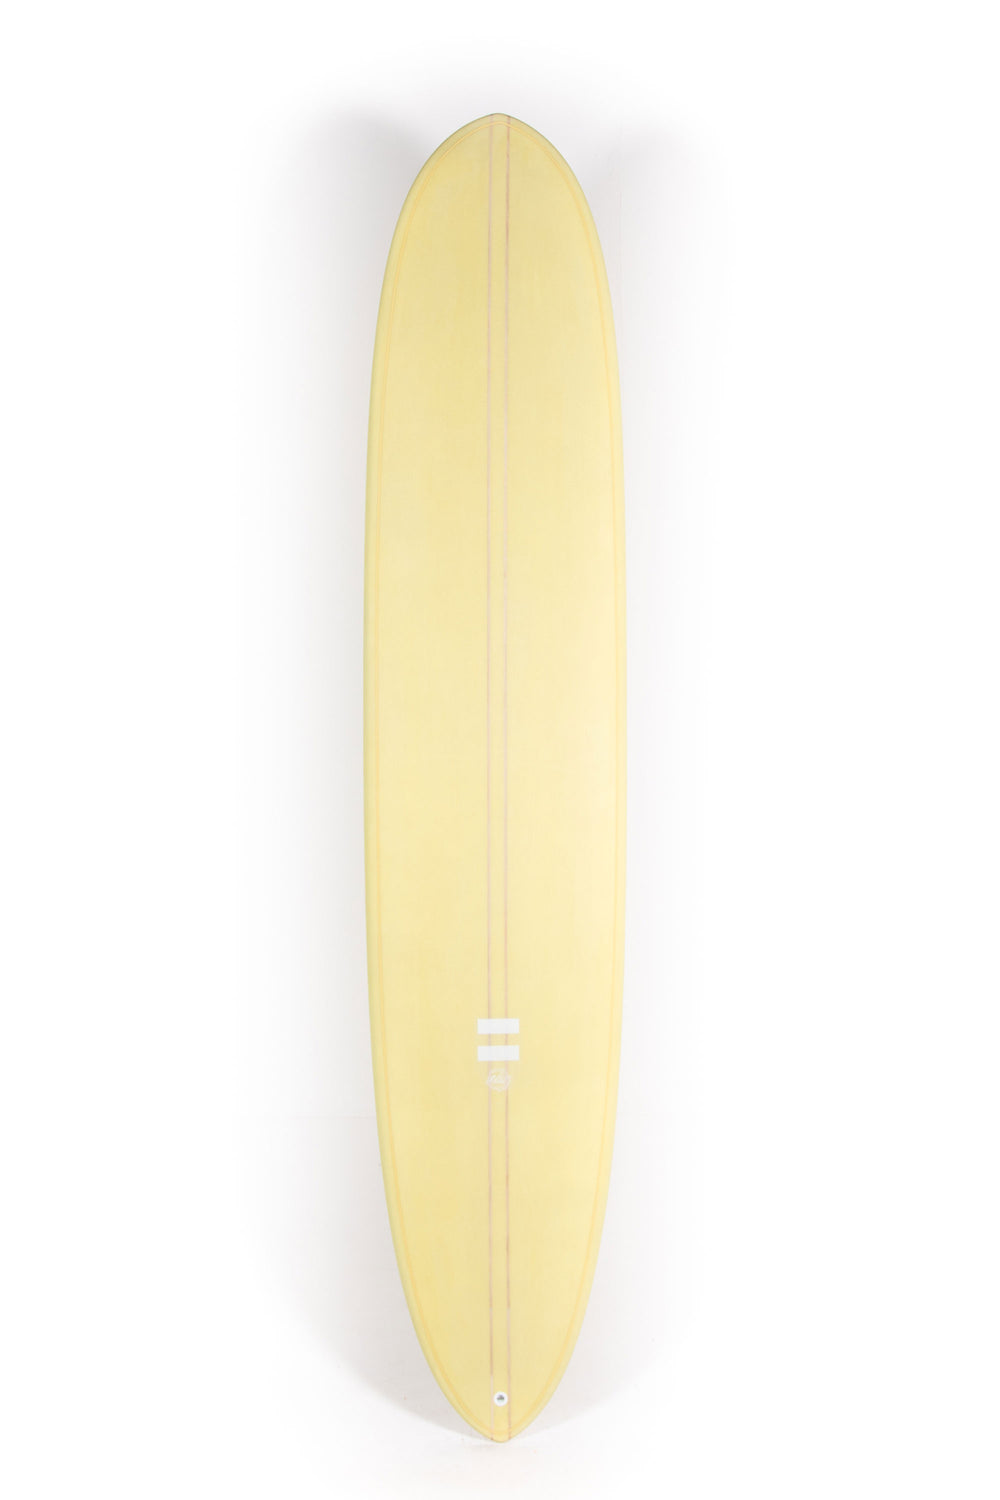 Pukas Surf Shop -  Indio Surfboards - TRIM MACHINE Ambiguous - Indio Endurance 9’1” x 21”7/8 x 2”7/8 - 70.2L